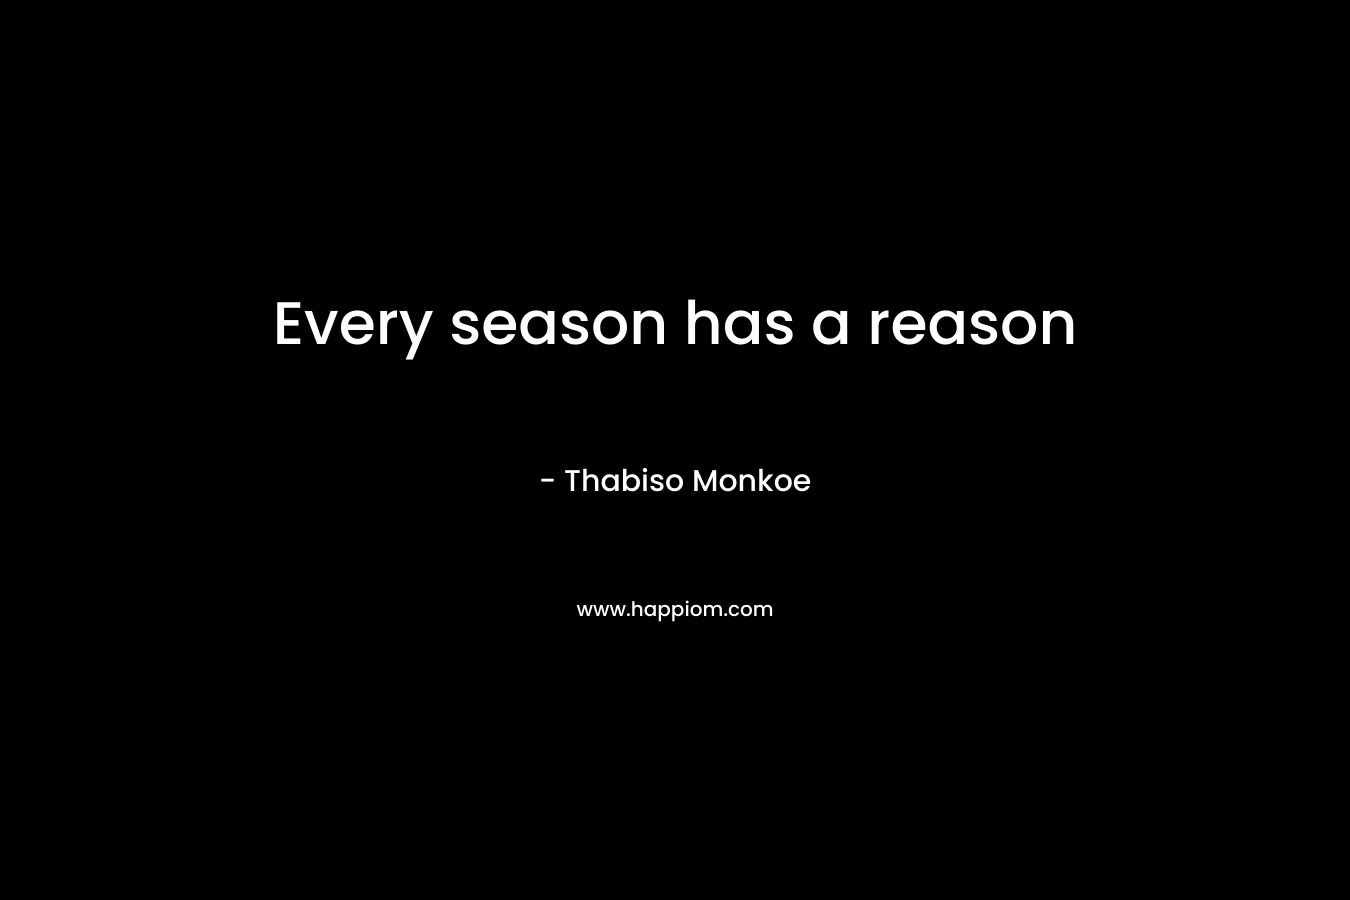 Every season has a reason